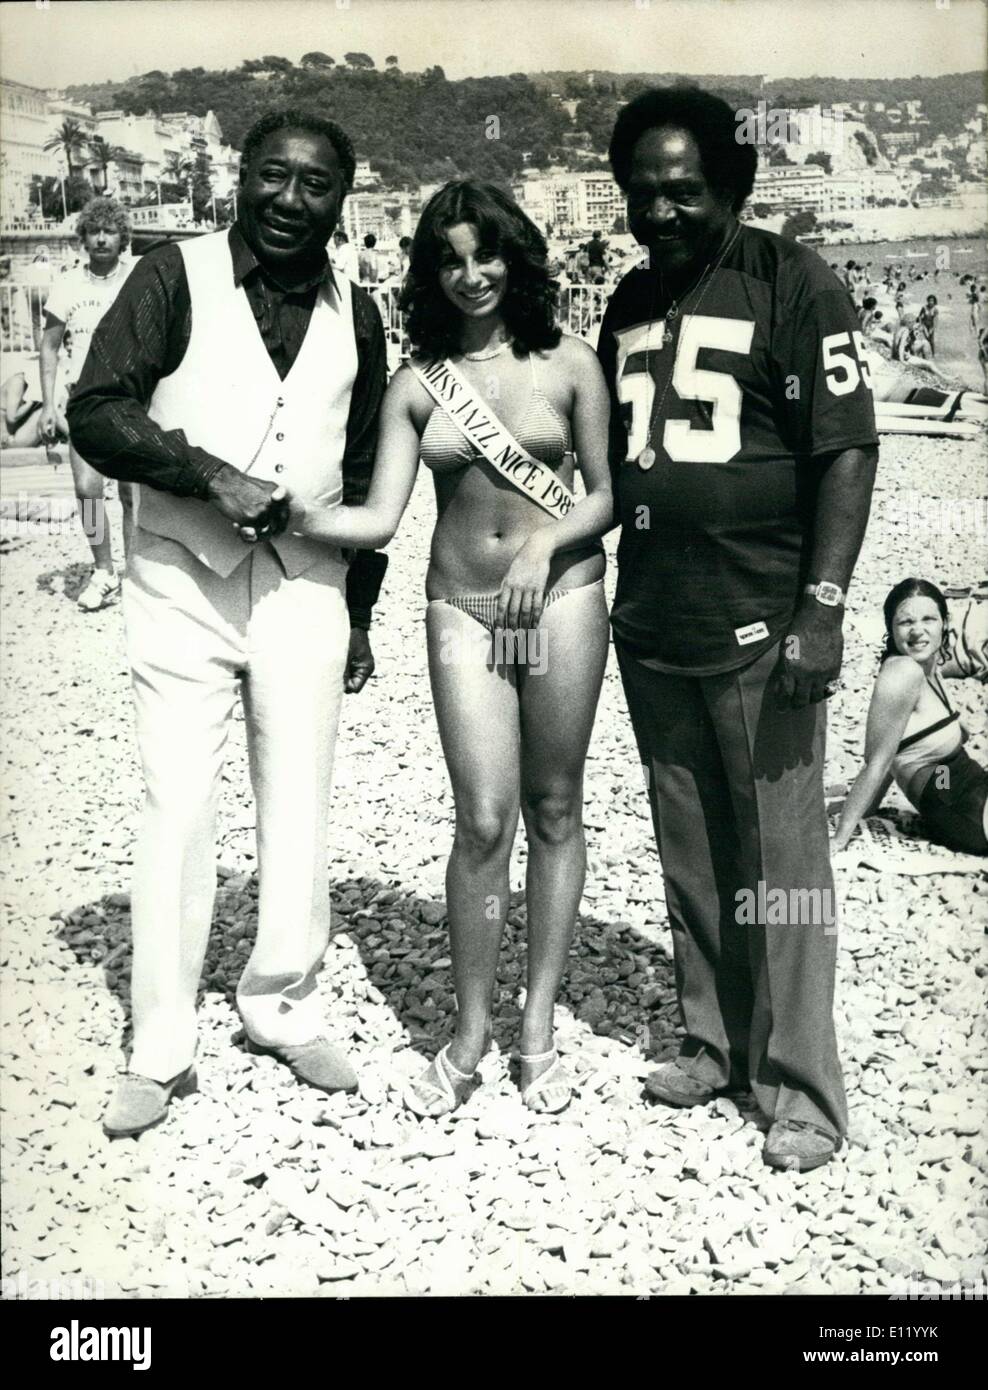 Le 17 janvier, 1981 - 18 ans de la Flore a été nommé ''Miss Jazz'' 1981 à Nice à l'occasion de la Jazz Parade. Elle est photographiée ici sur la plage entre les deux chanteurs Muddy Waters (en blanc) et Jimmy Witherspoon. Banque D'Images